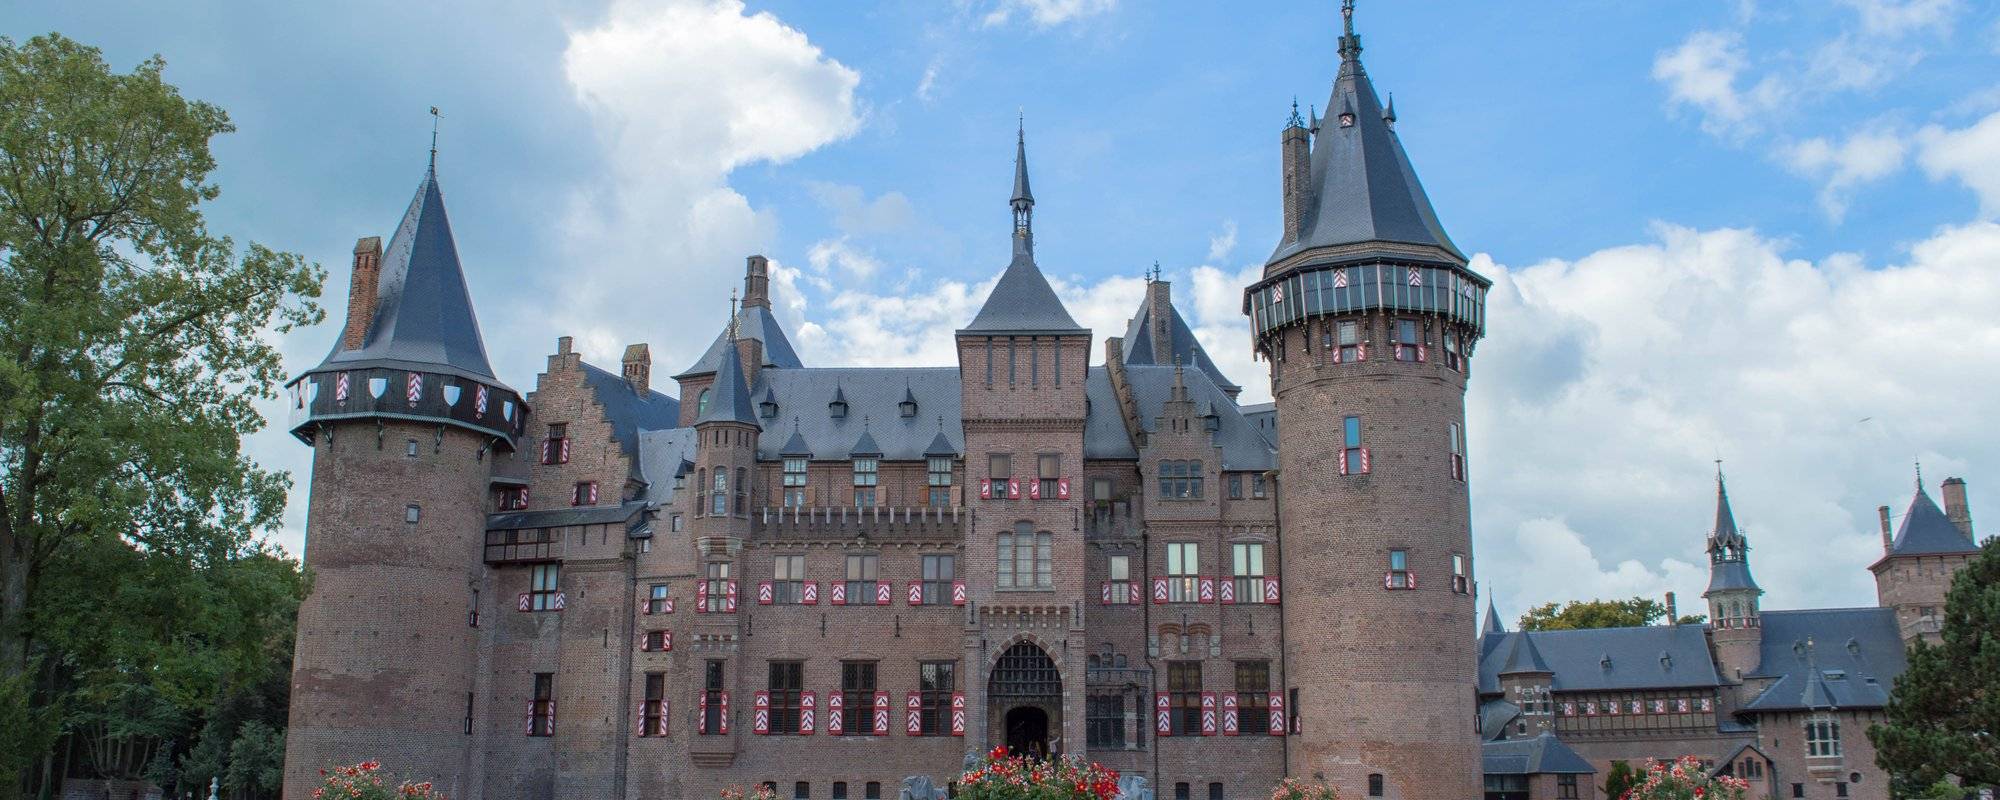 Travel adventures - Castle De Haar in the Netherlands